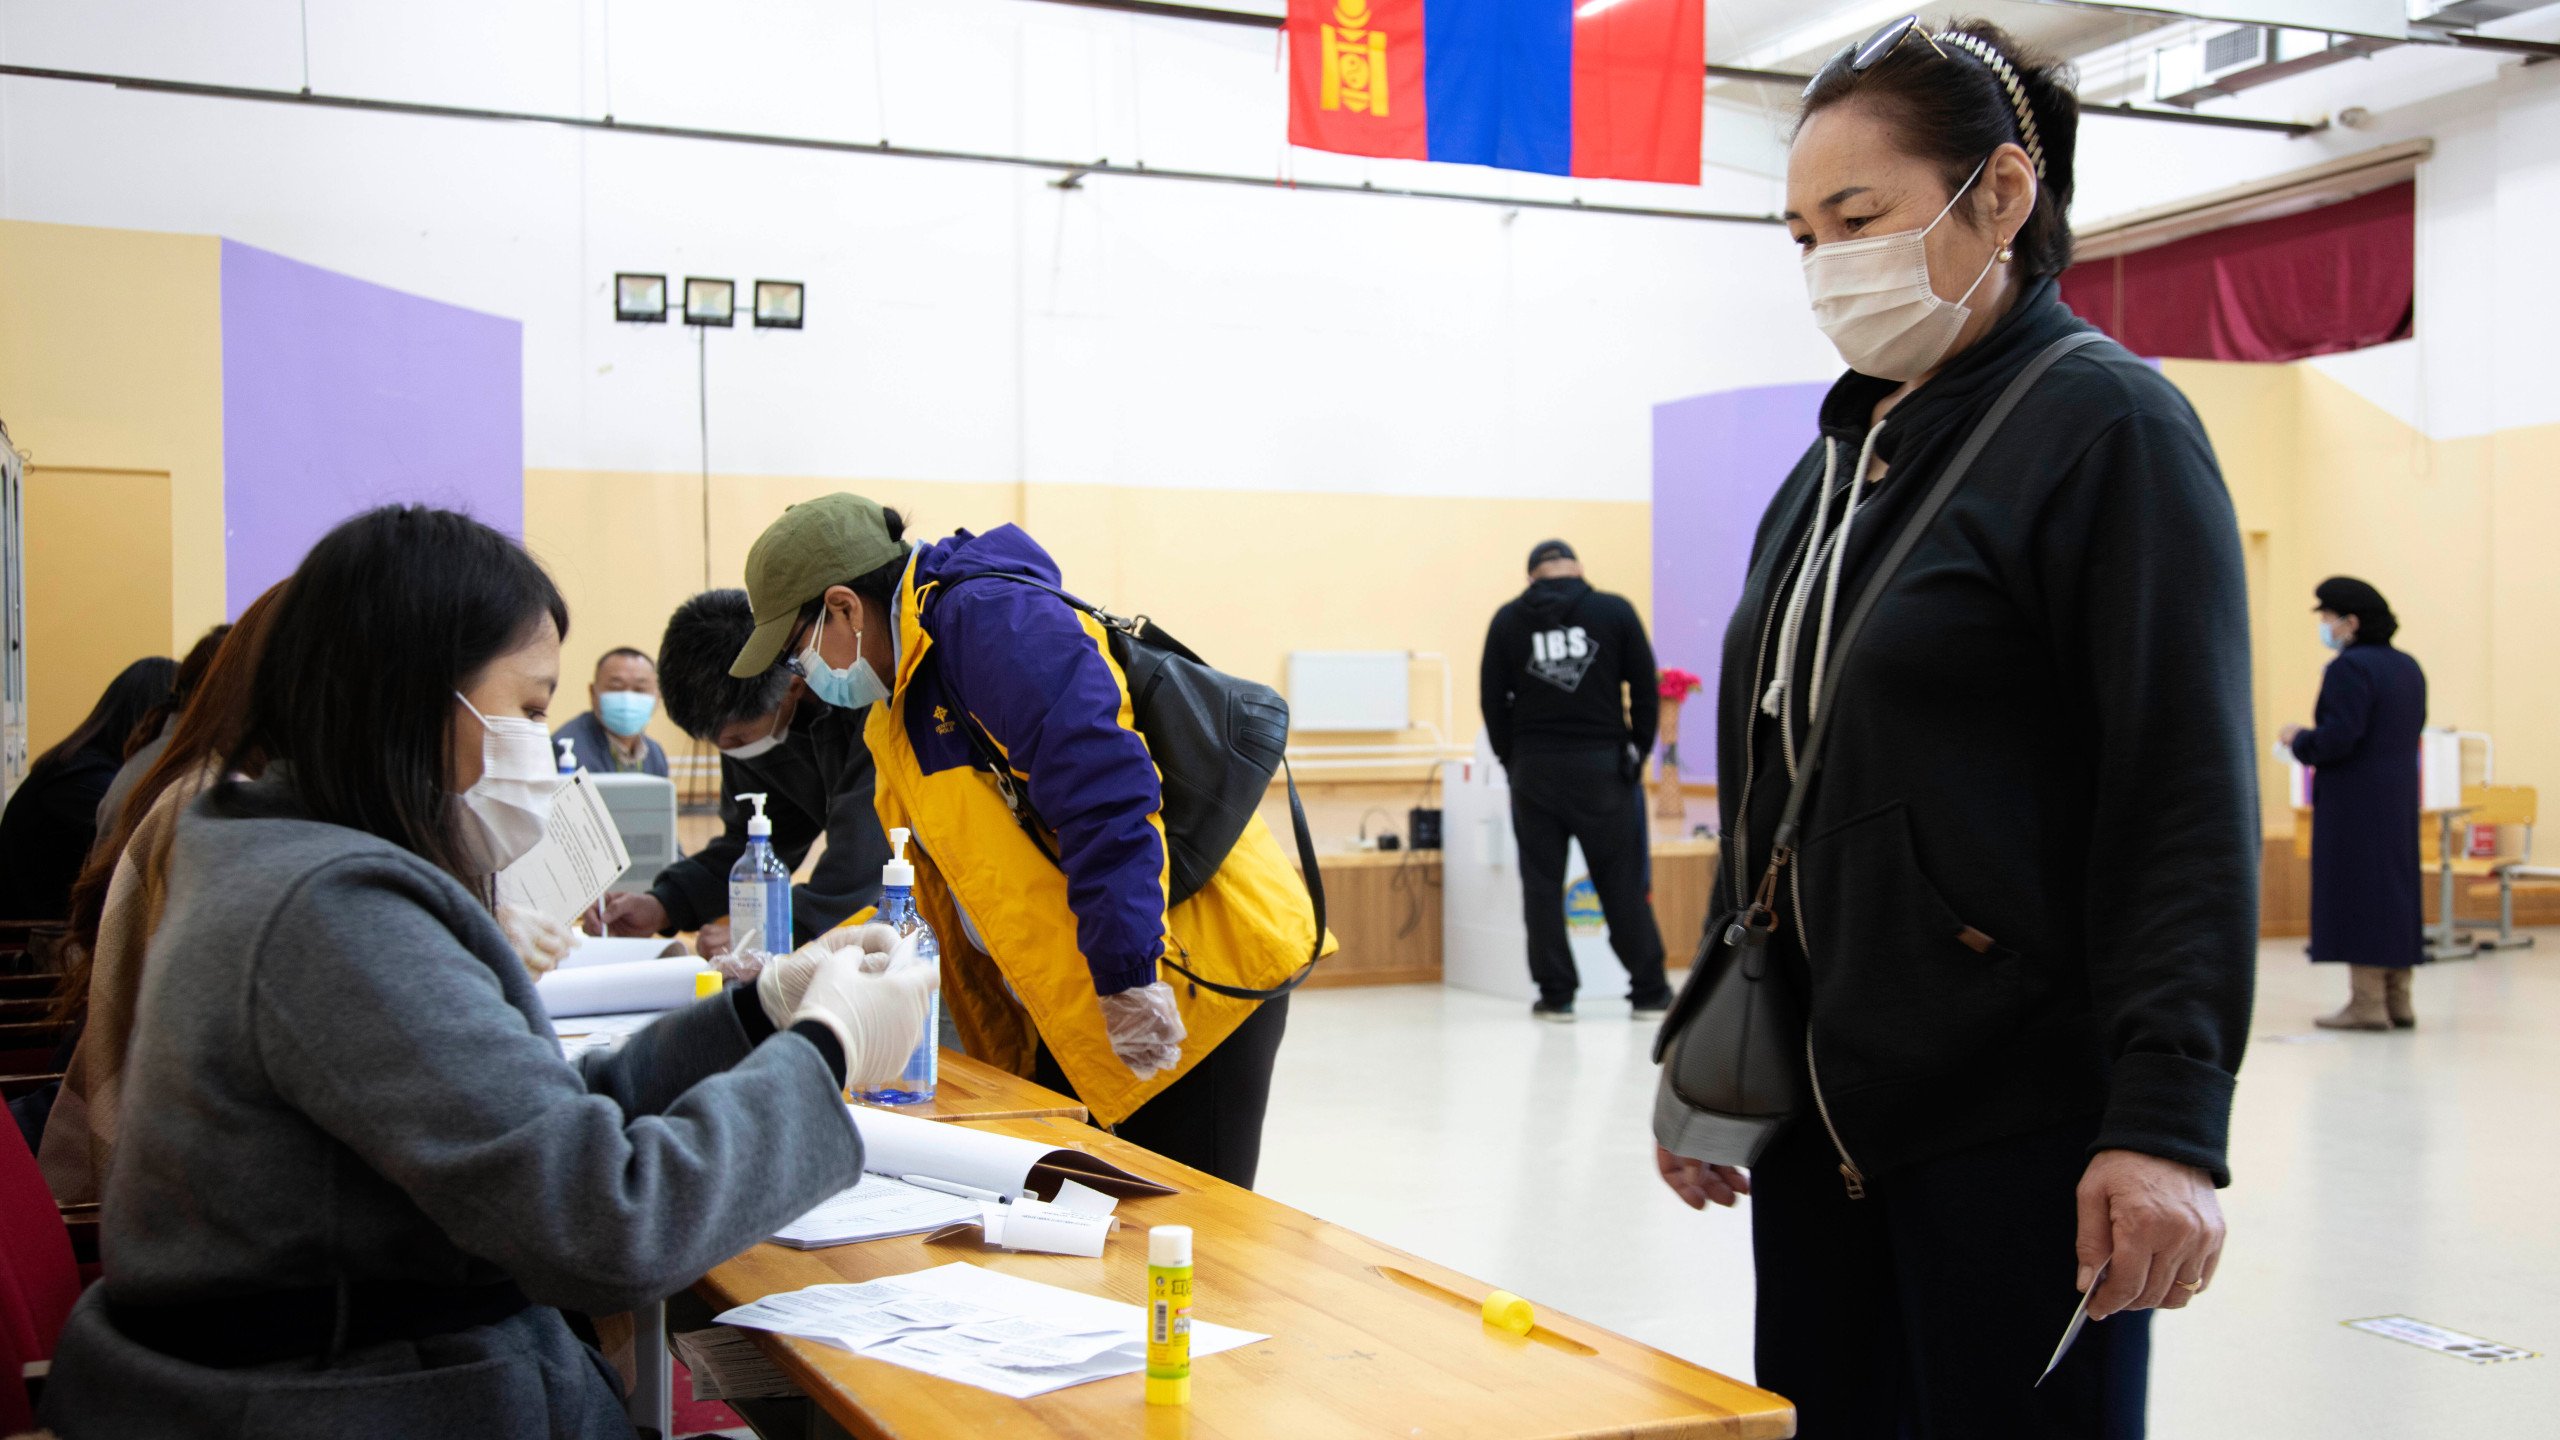 मङ्गोलियामा राष्ट्रपतिका लागि निर्वाचन शुरु